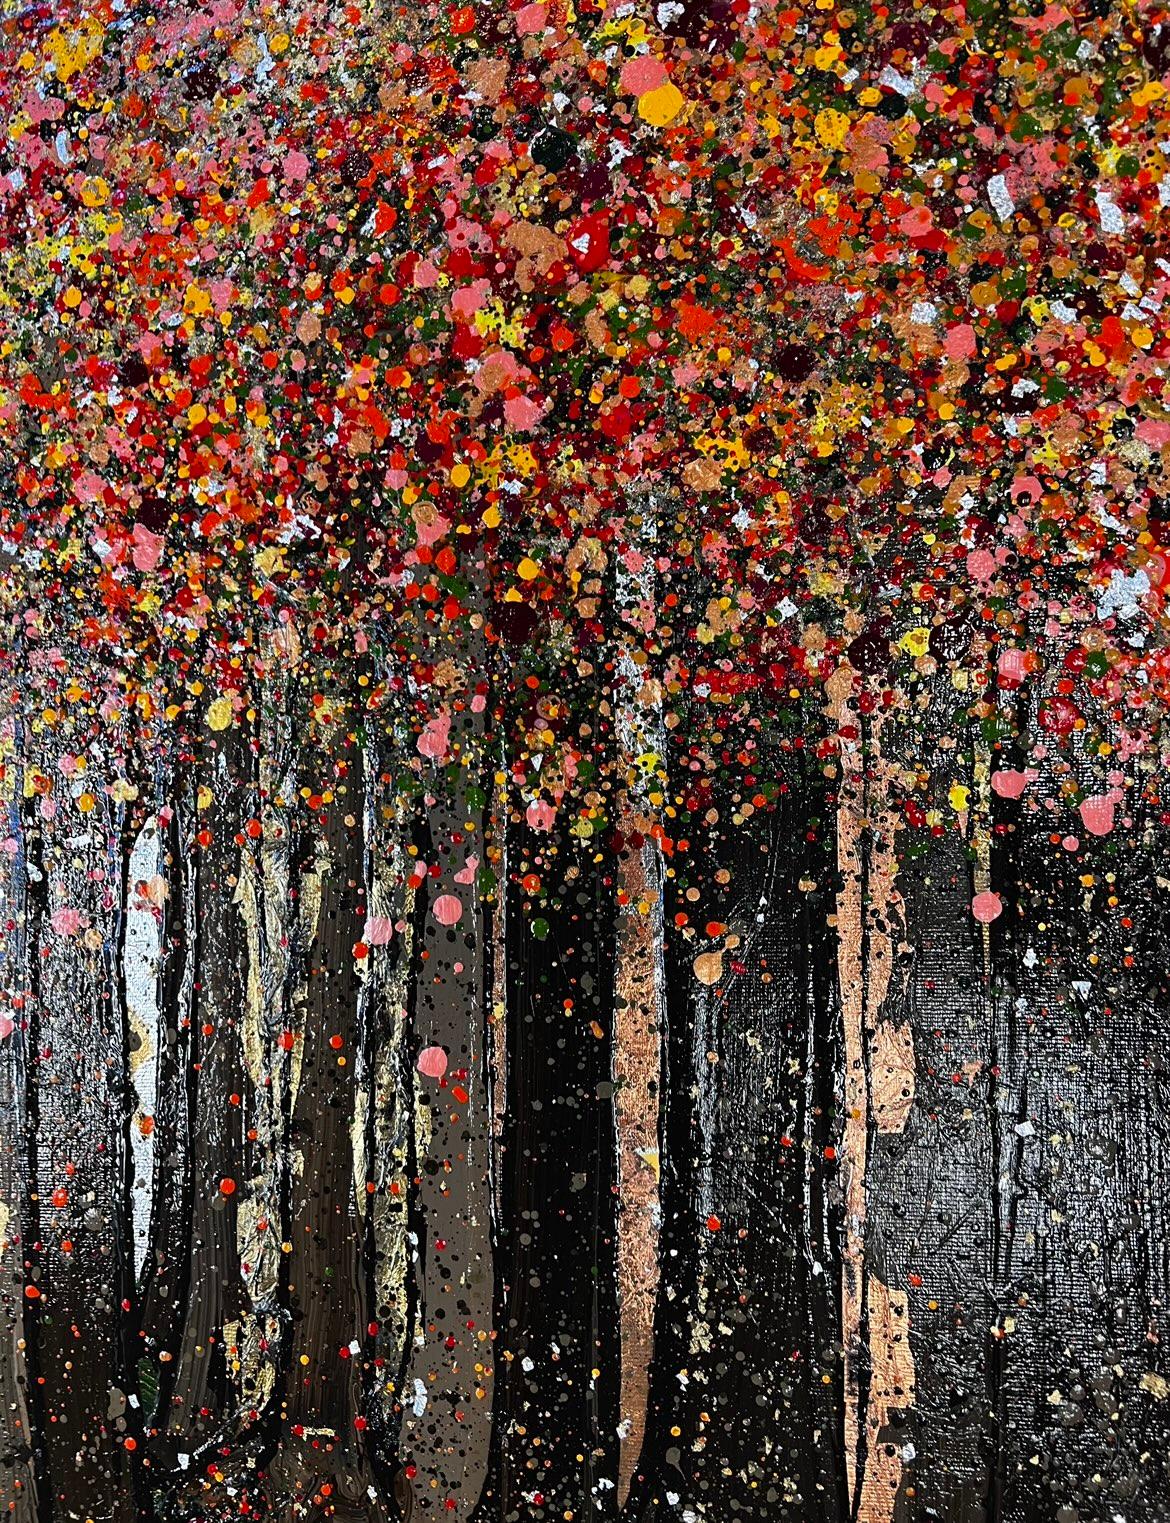 Im schönen Herbstwald von Nicky Chubb [2021]
original und handsigniert vom Künstler 

Acrylfarbe auf Leinwand

Bildgröße: H:120 cm x B:60 cm

Gesamtgröße des ungerahmten Werks: H:120 cm x B:60 cm x T:5cm

Ungerahmt verkauft

Bitte beachten Sie, dass